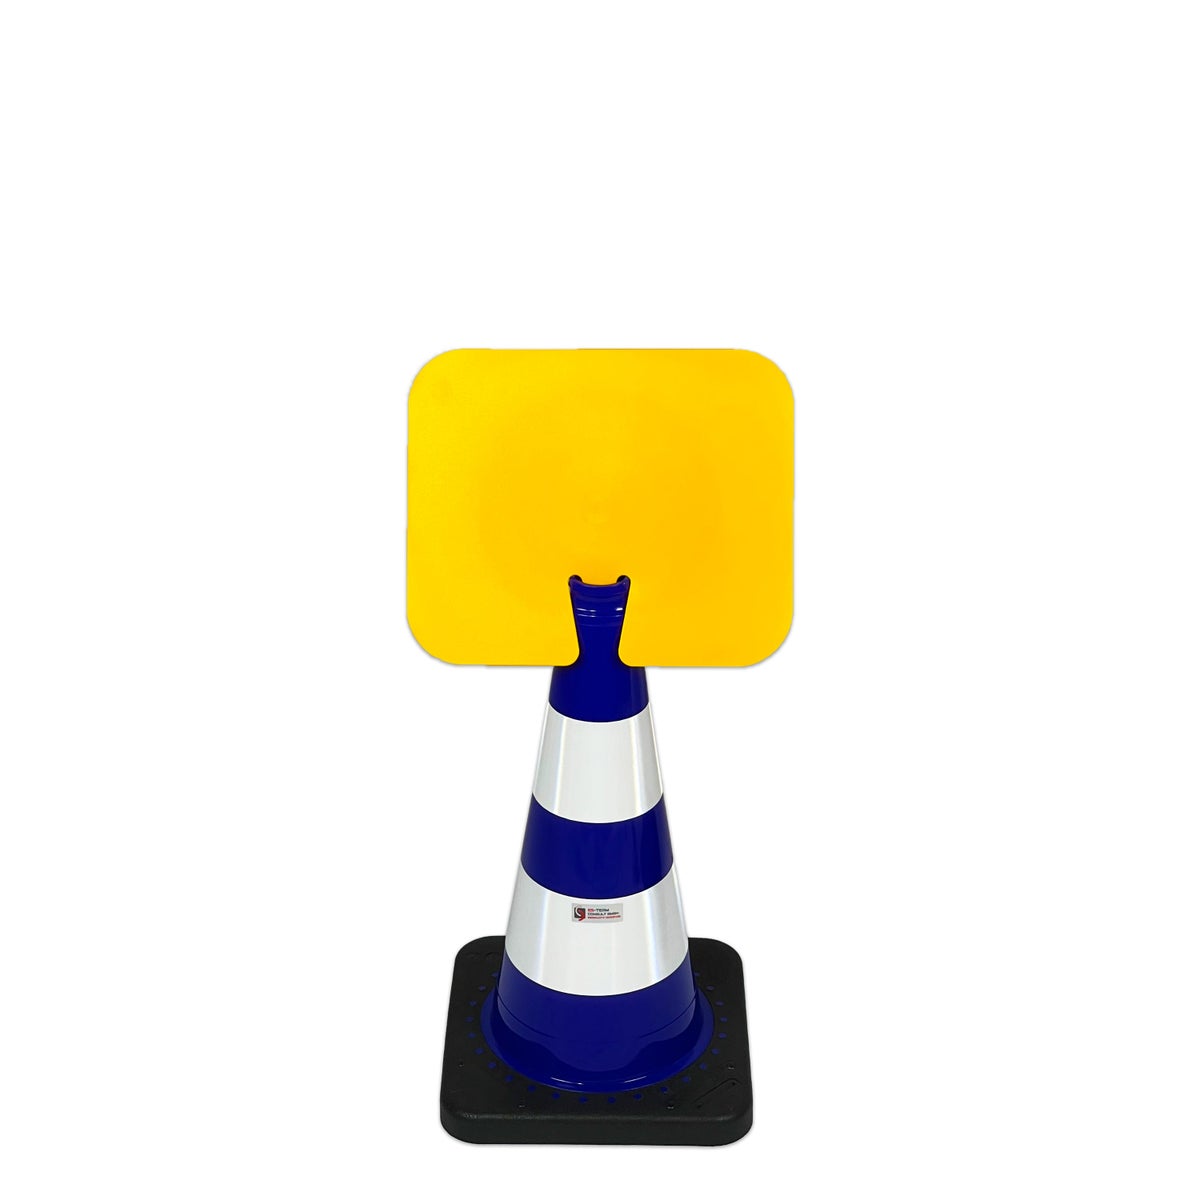 UvV Flex Kegel 50 oder 75cm weiße Streifen + Aufsteckschild Wunschtext / Kegel 500 mm / blau/gelb - gelbes Schild